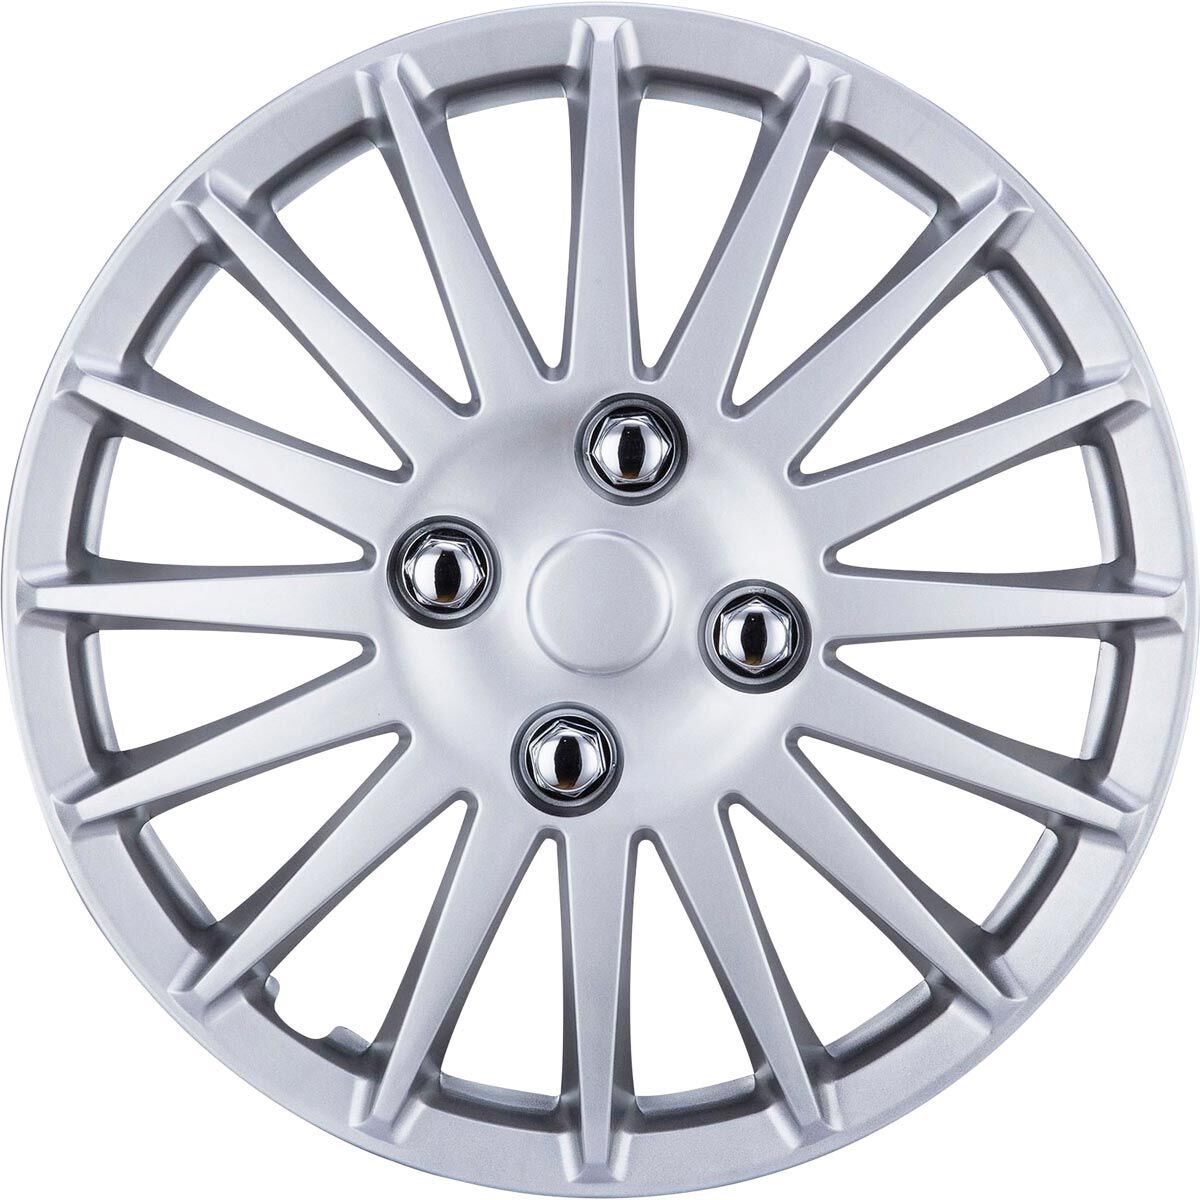 SCA Wheel Covers Turbine Silver 13